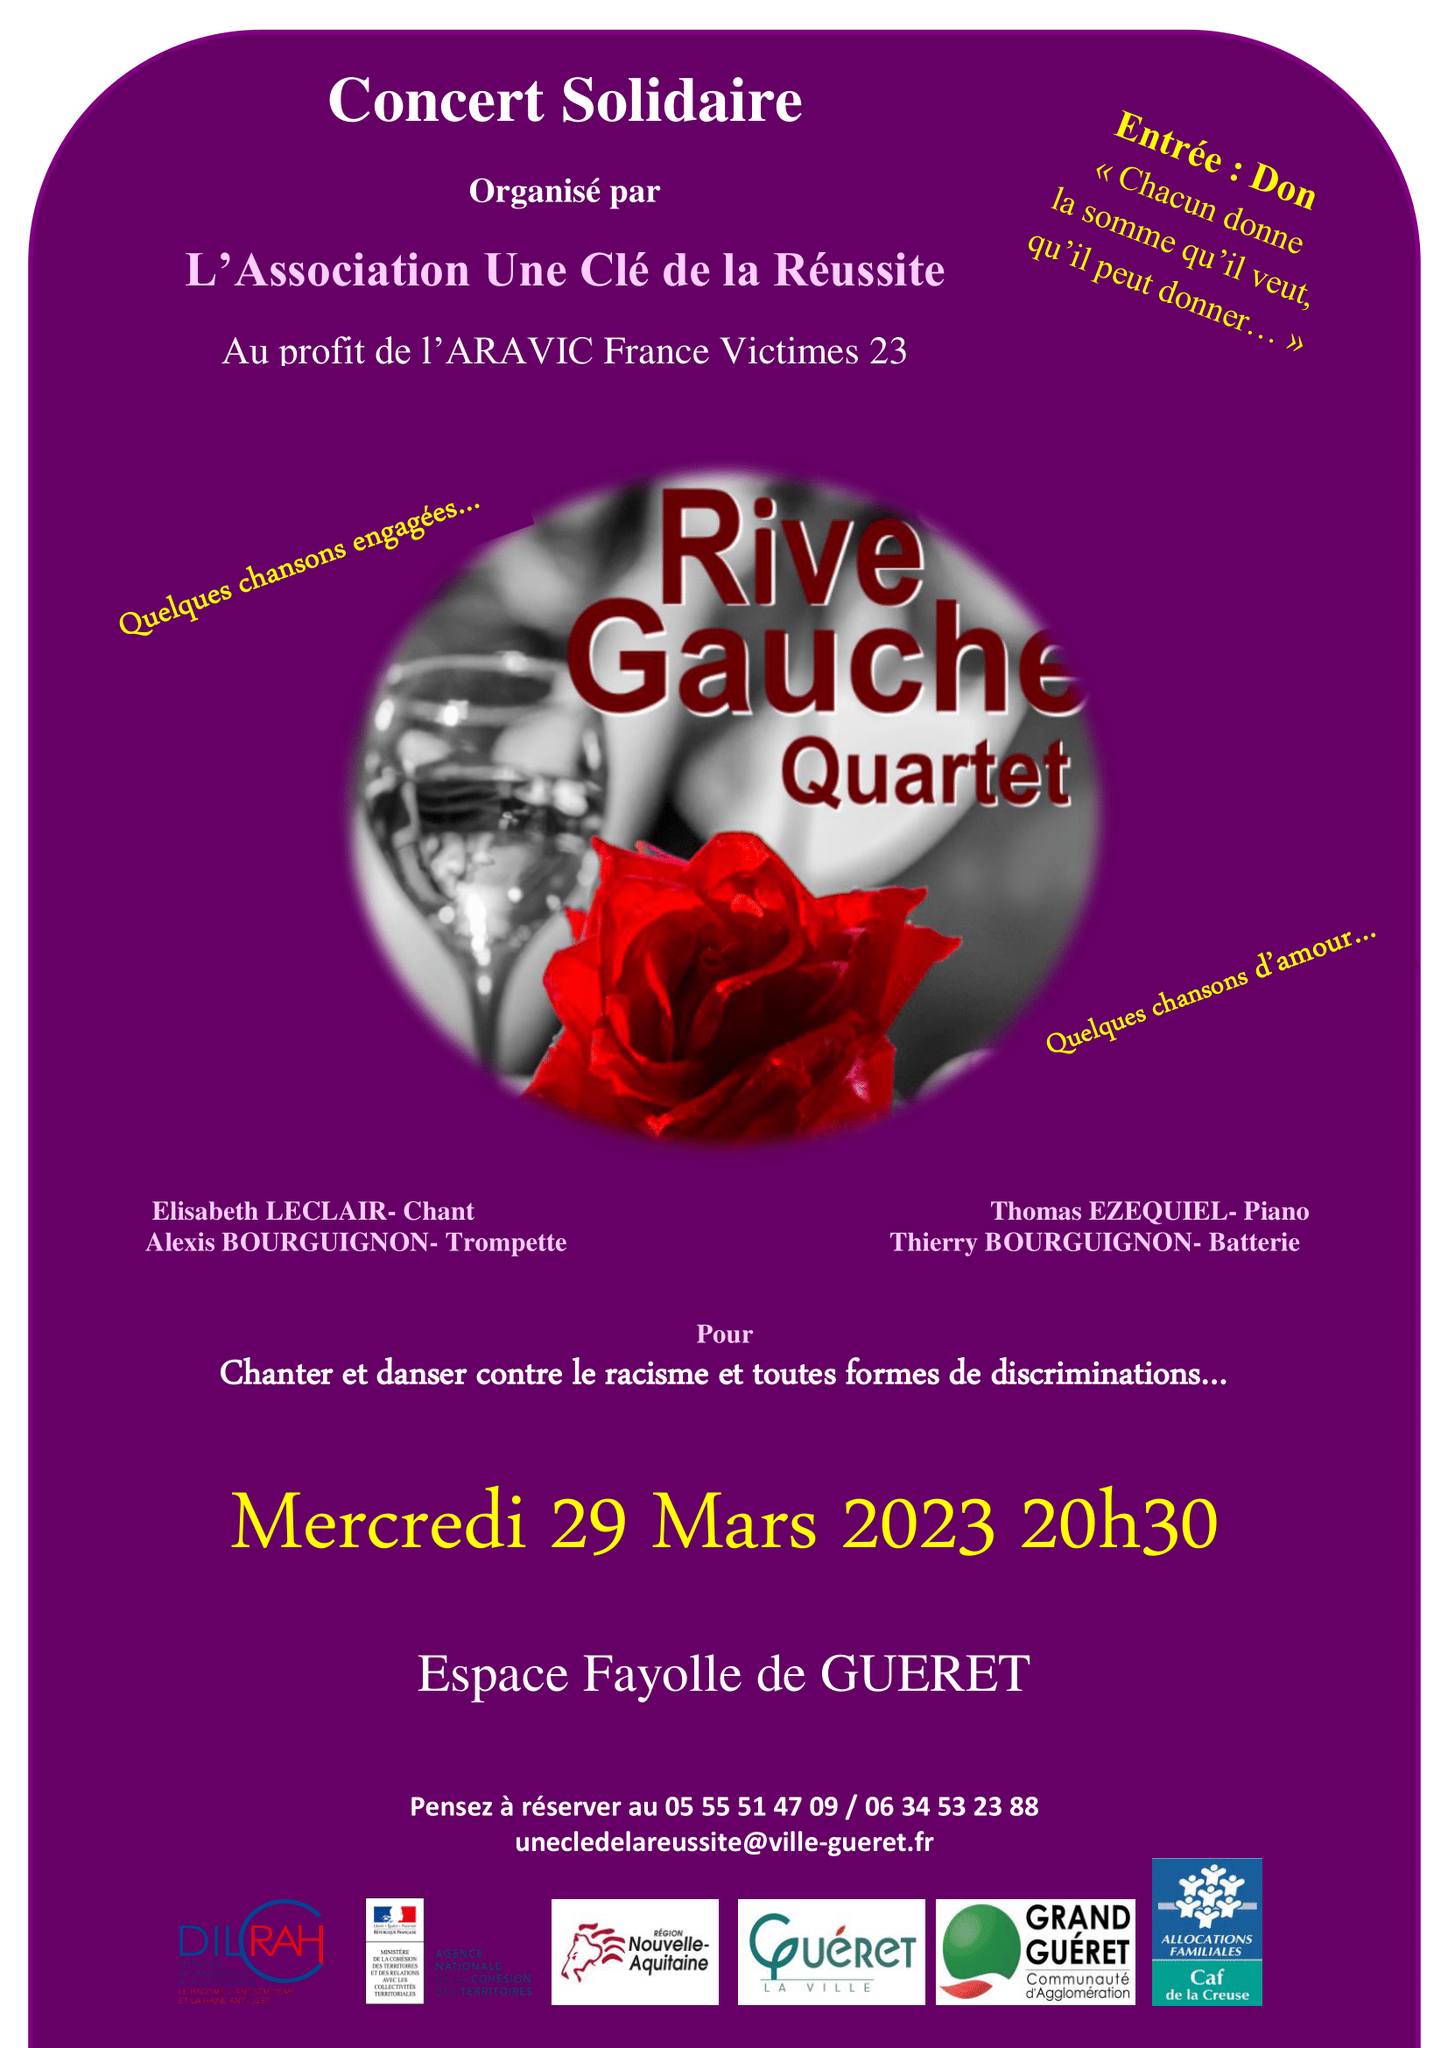 Rive Gauche quartet